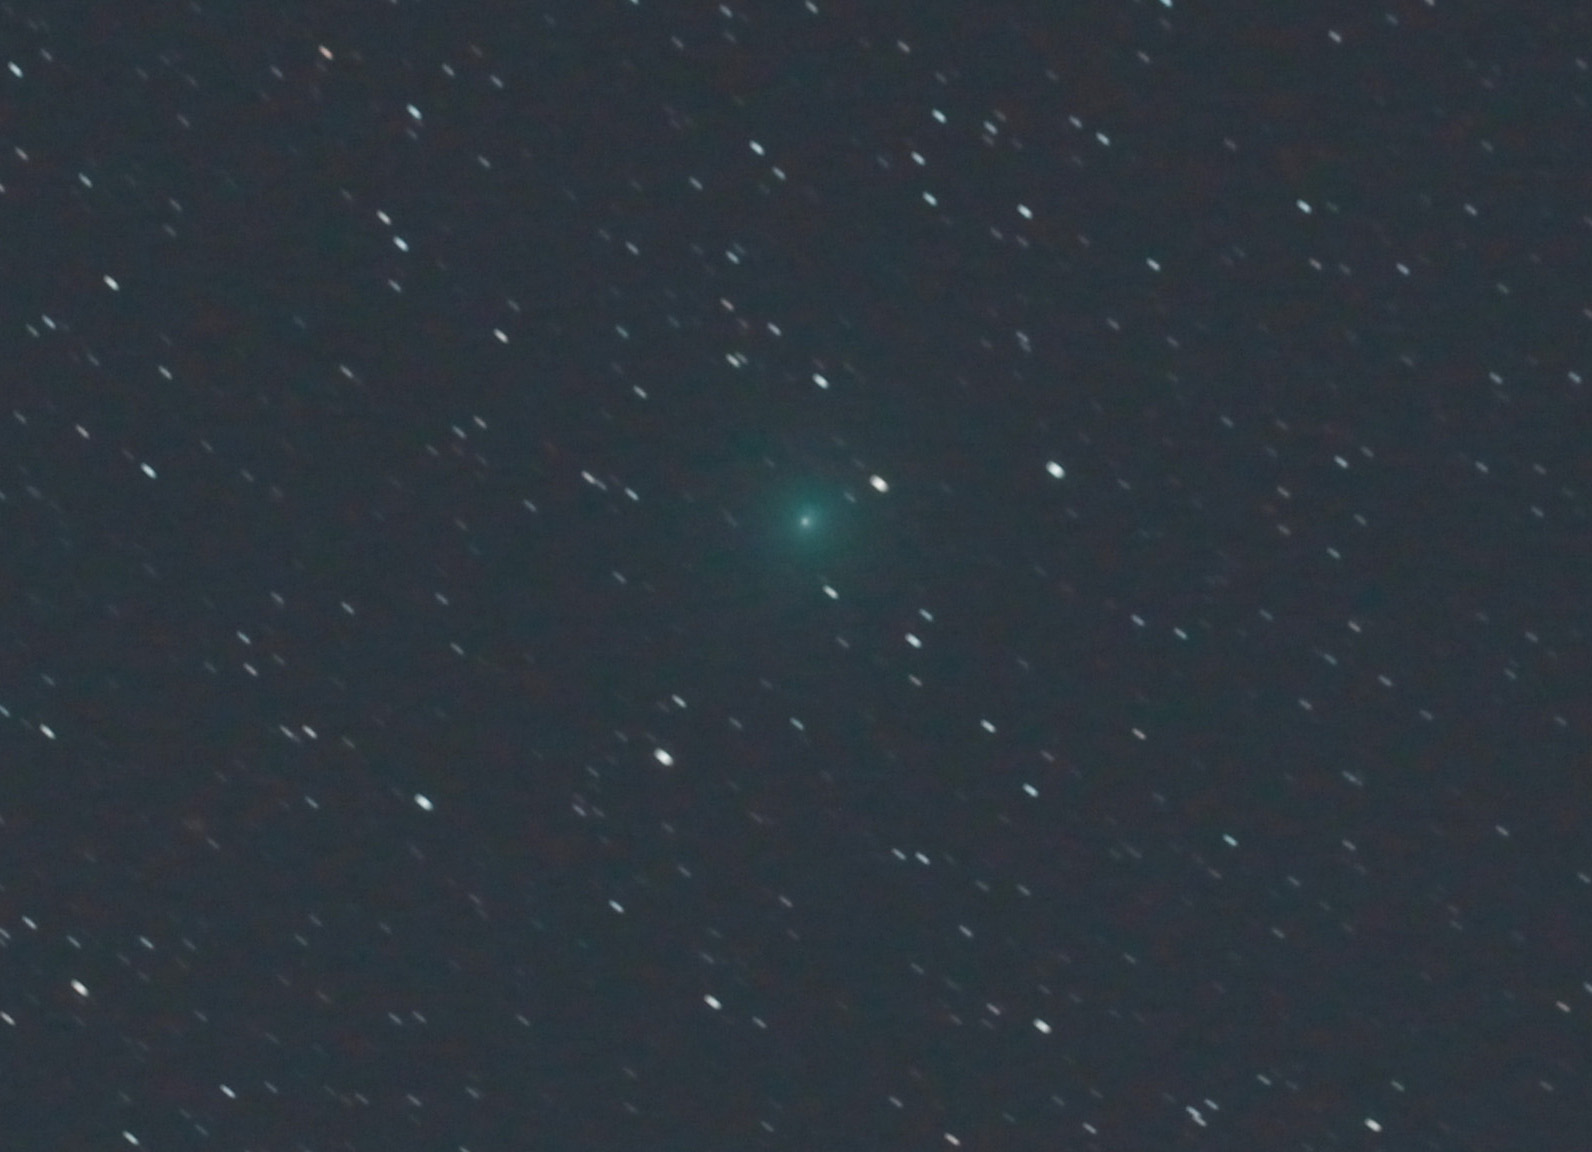 C2020 M3 comet align.jpg